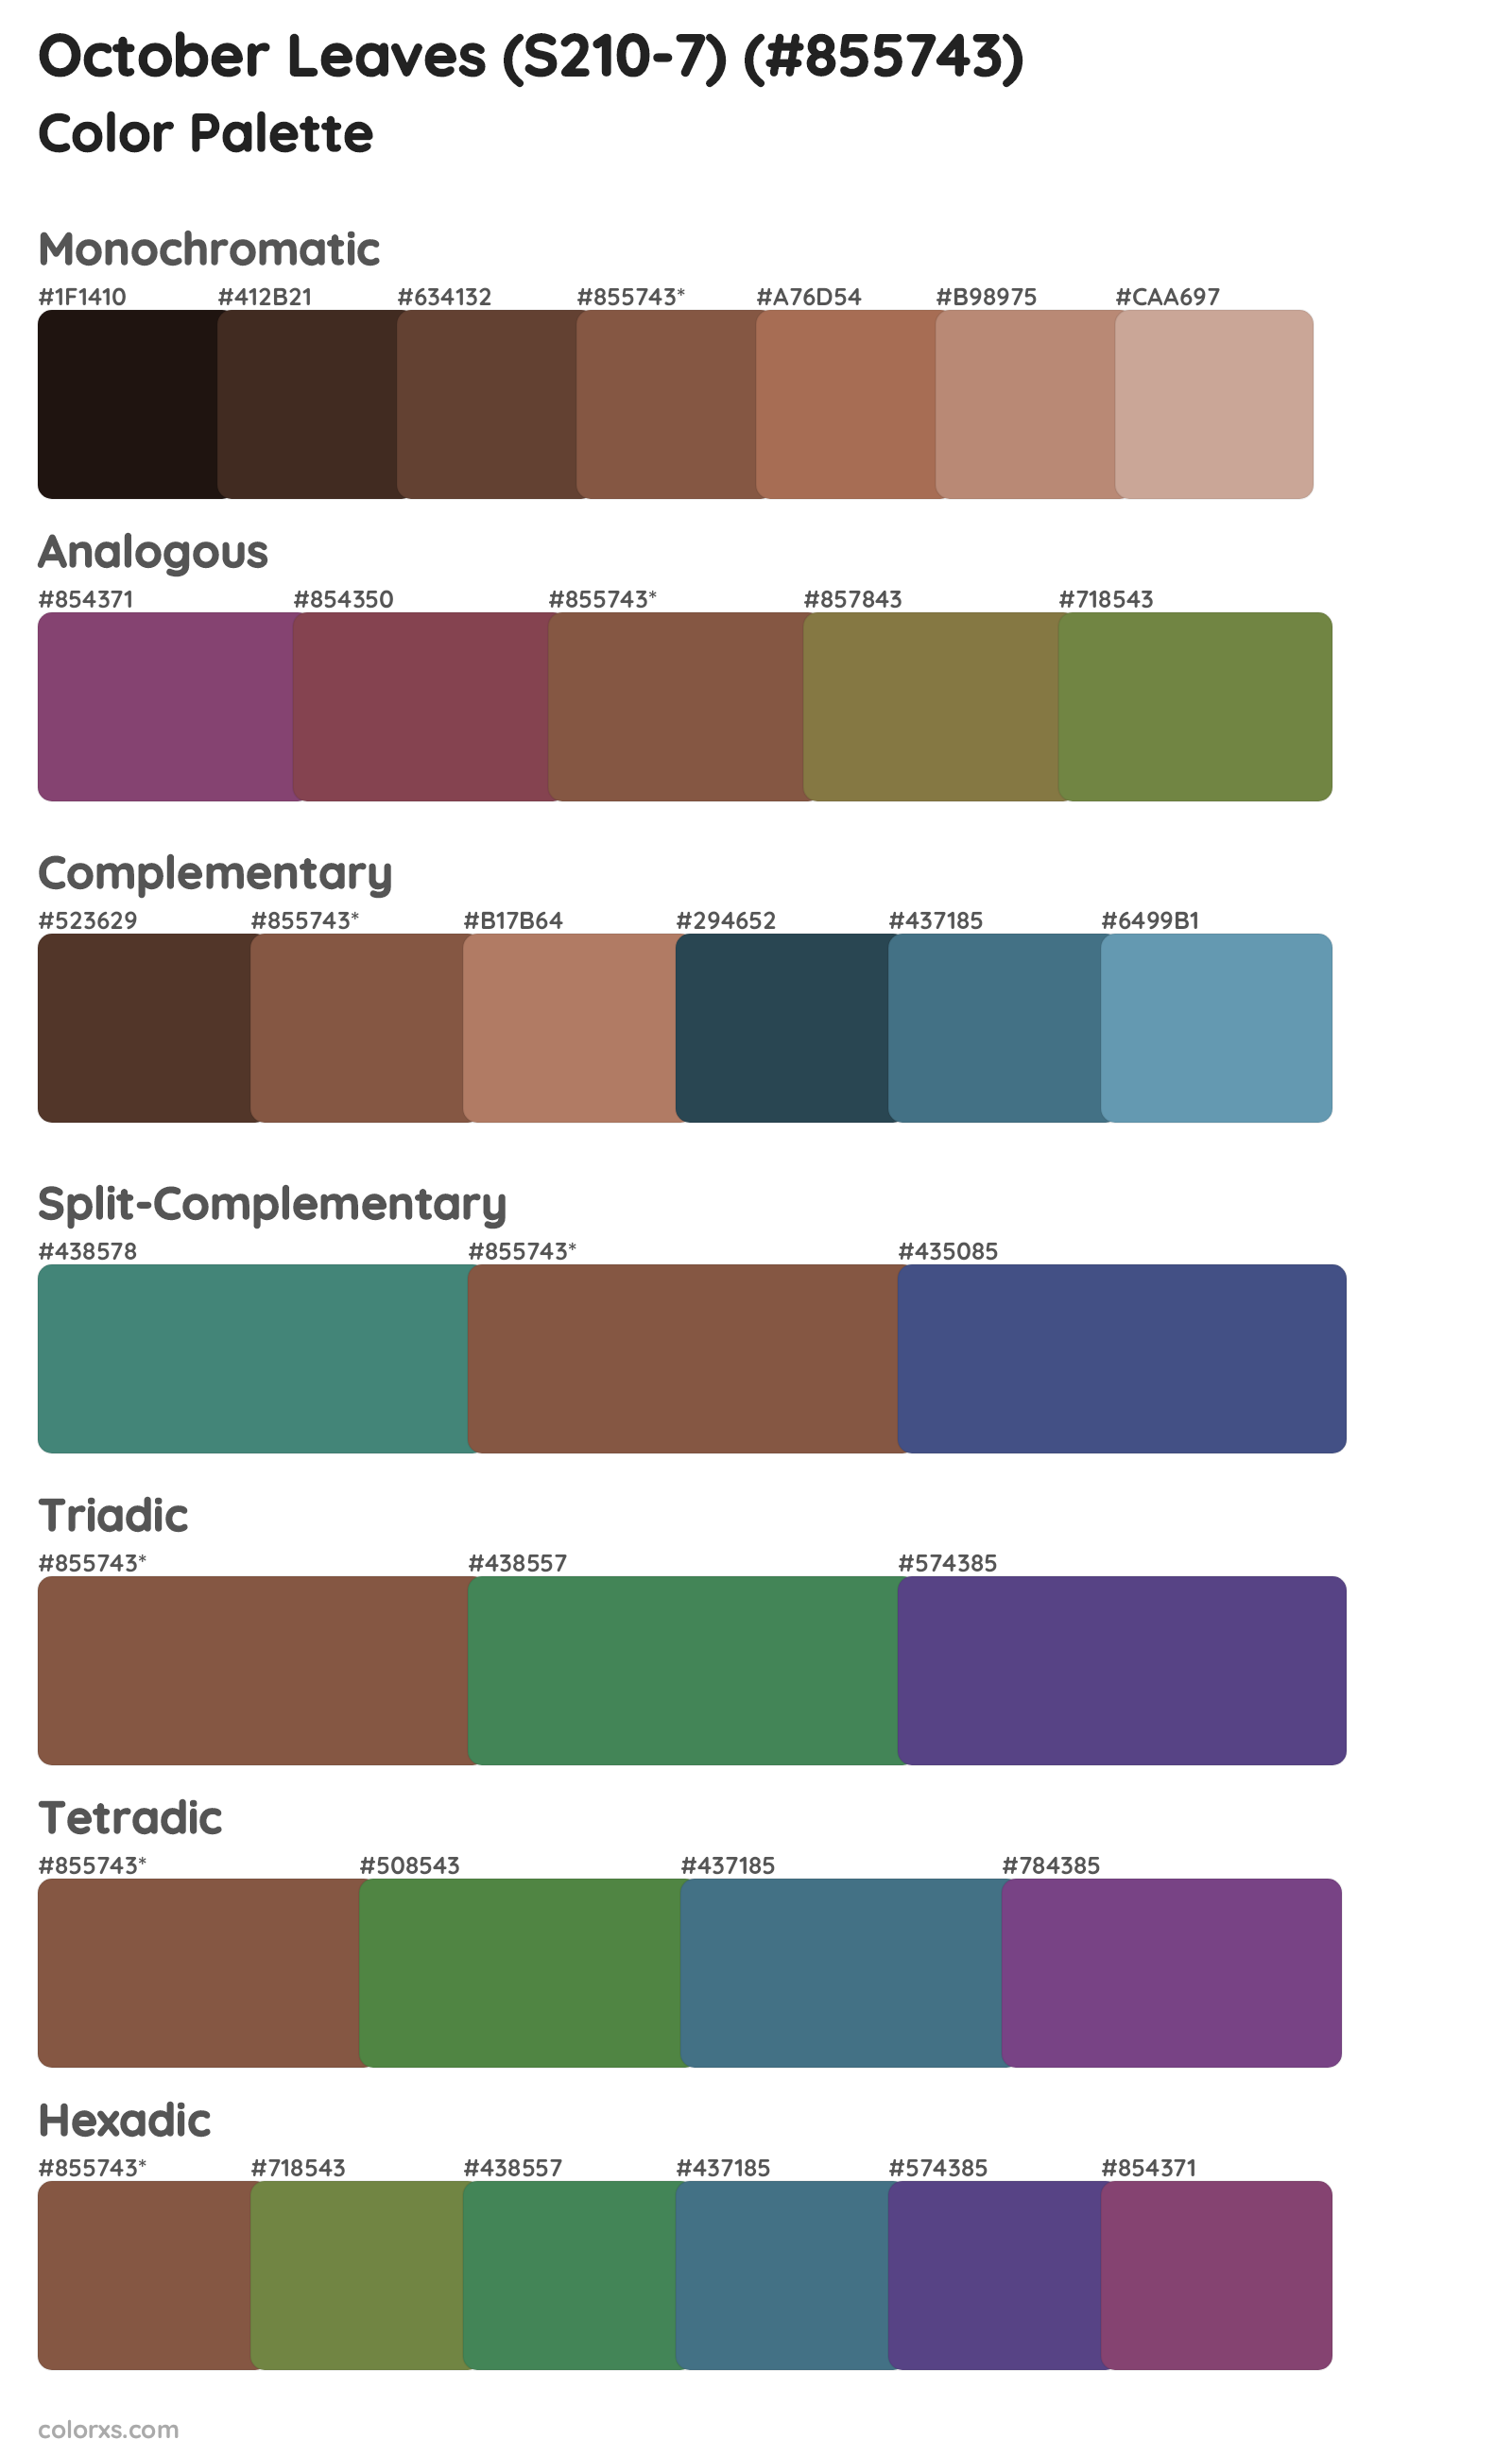 October Leaves (S210-7) Color Scheme Palettes